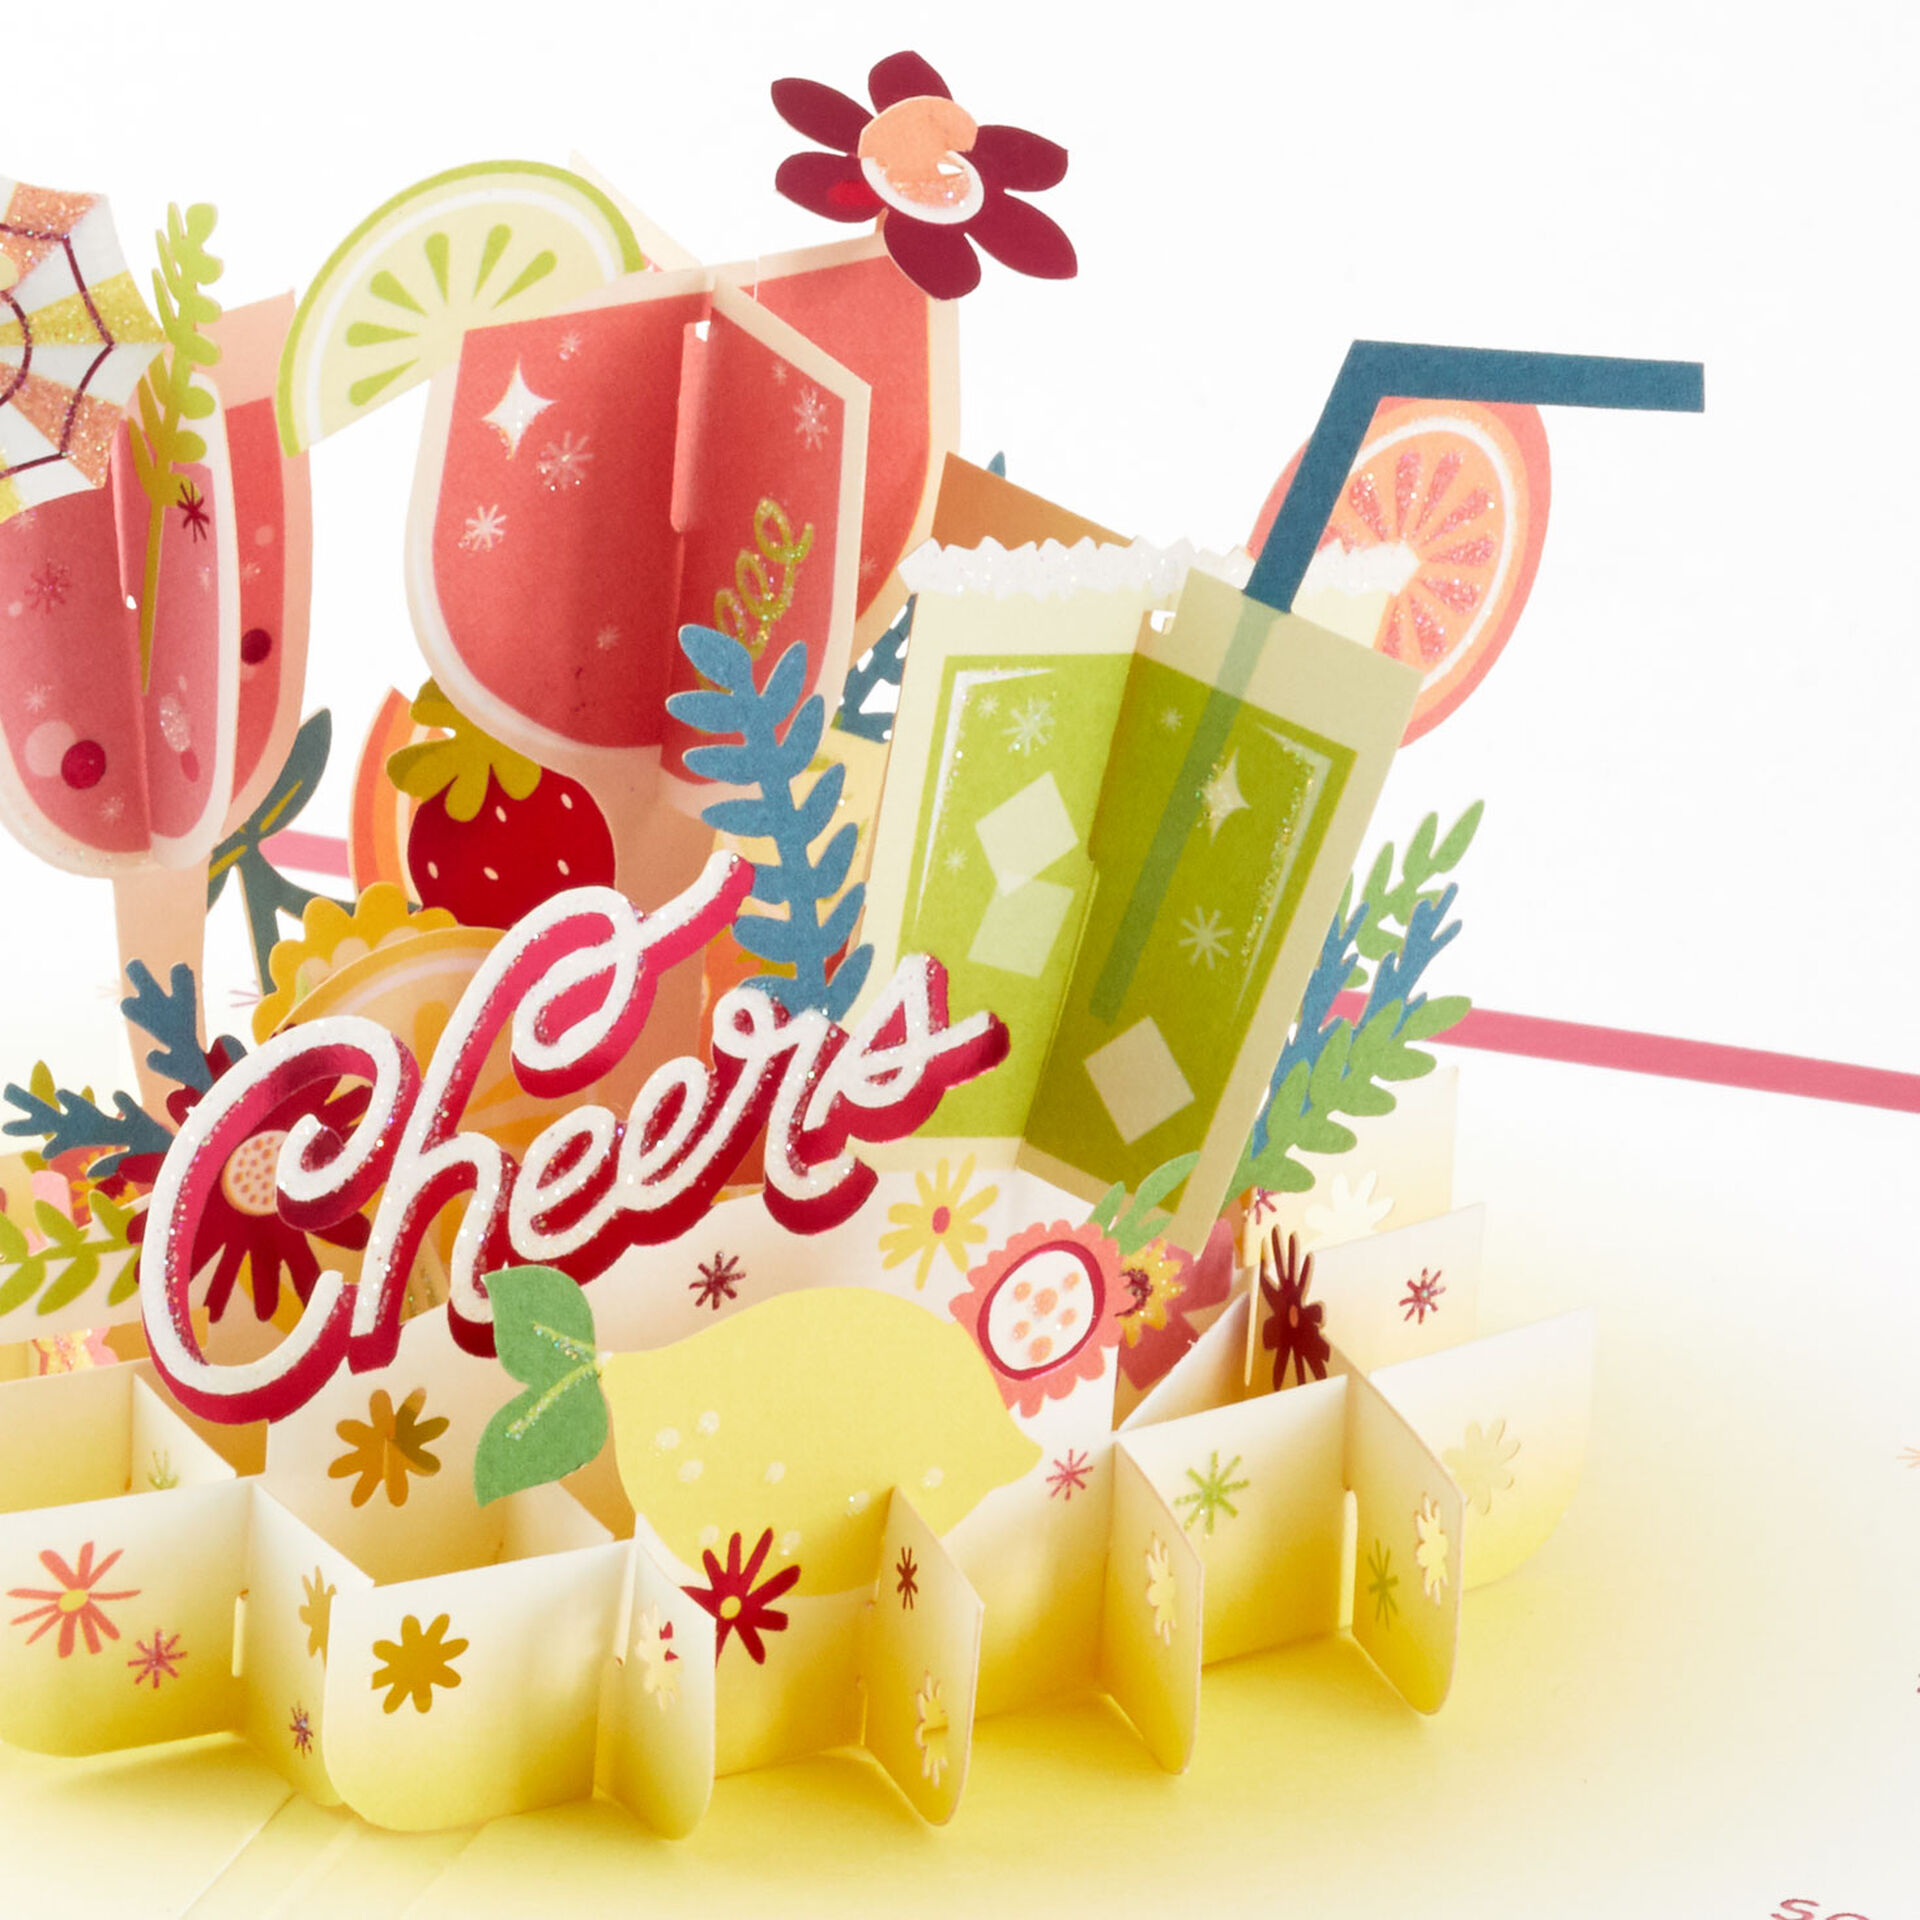 Fruit-Cocktail-Drinks-Celebration-3D-PopUp-Card-for-Her_1299LAD2897_04